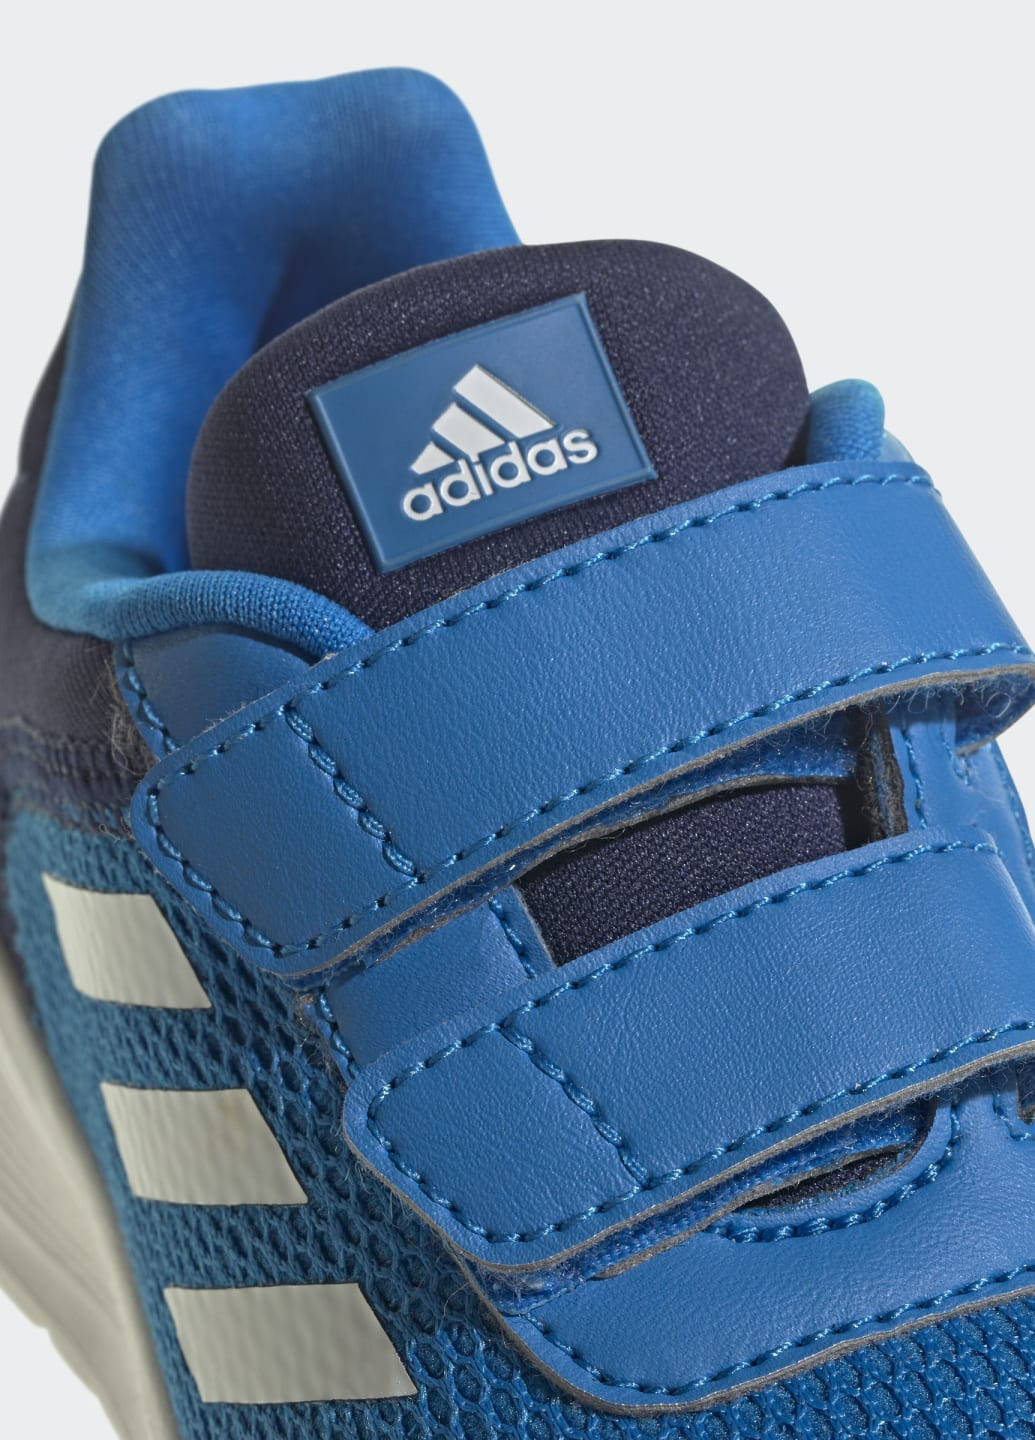 Синие всесезонные кроссовки tensaur adidas